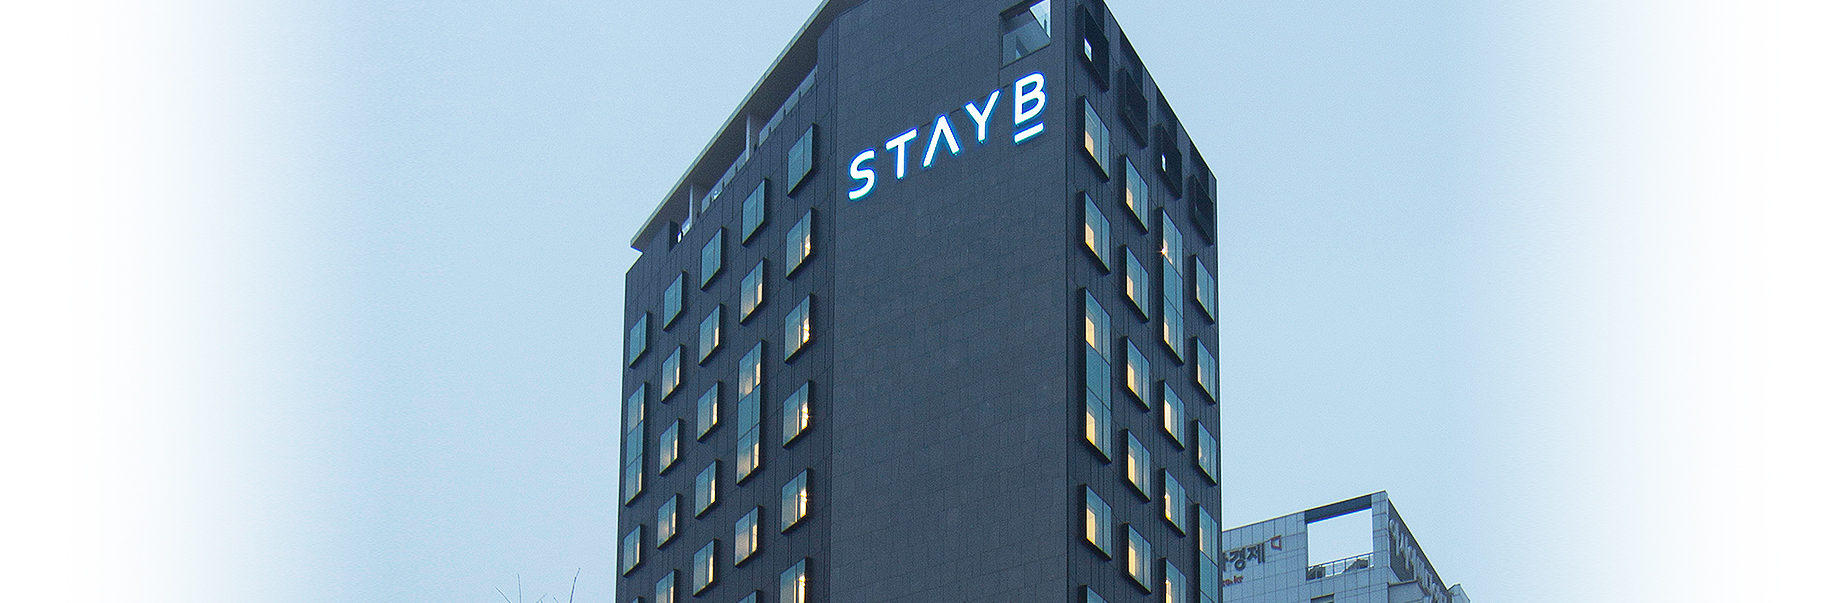 stayb hotel